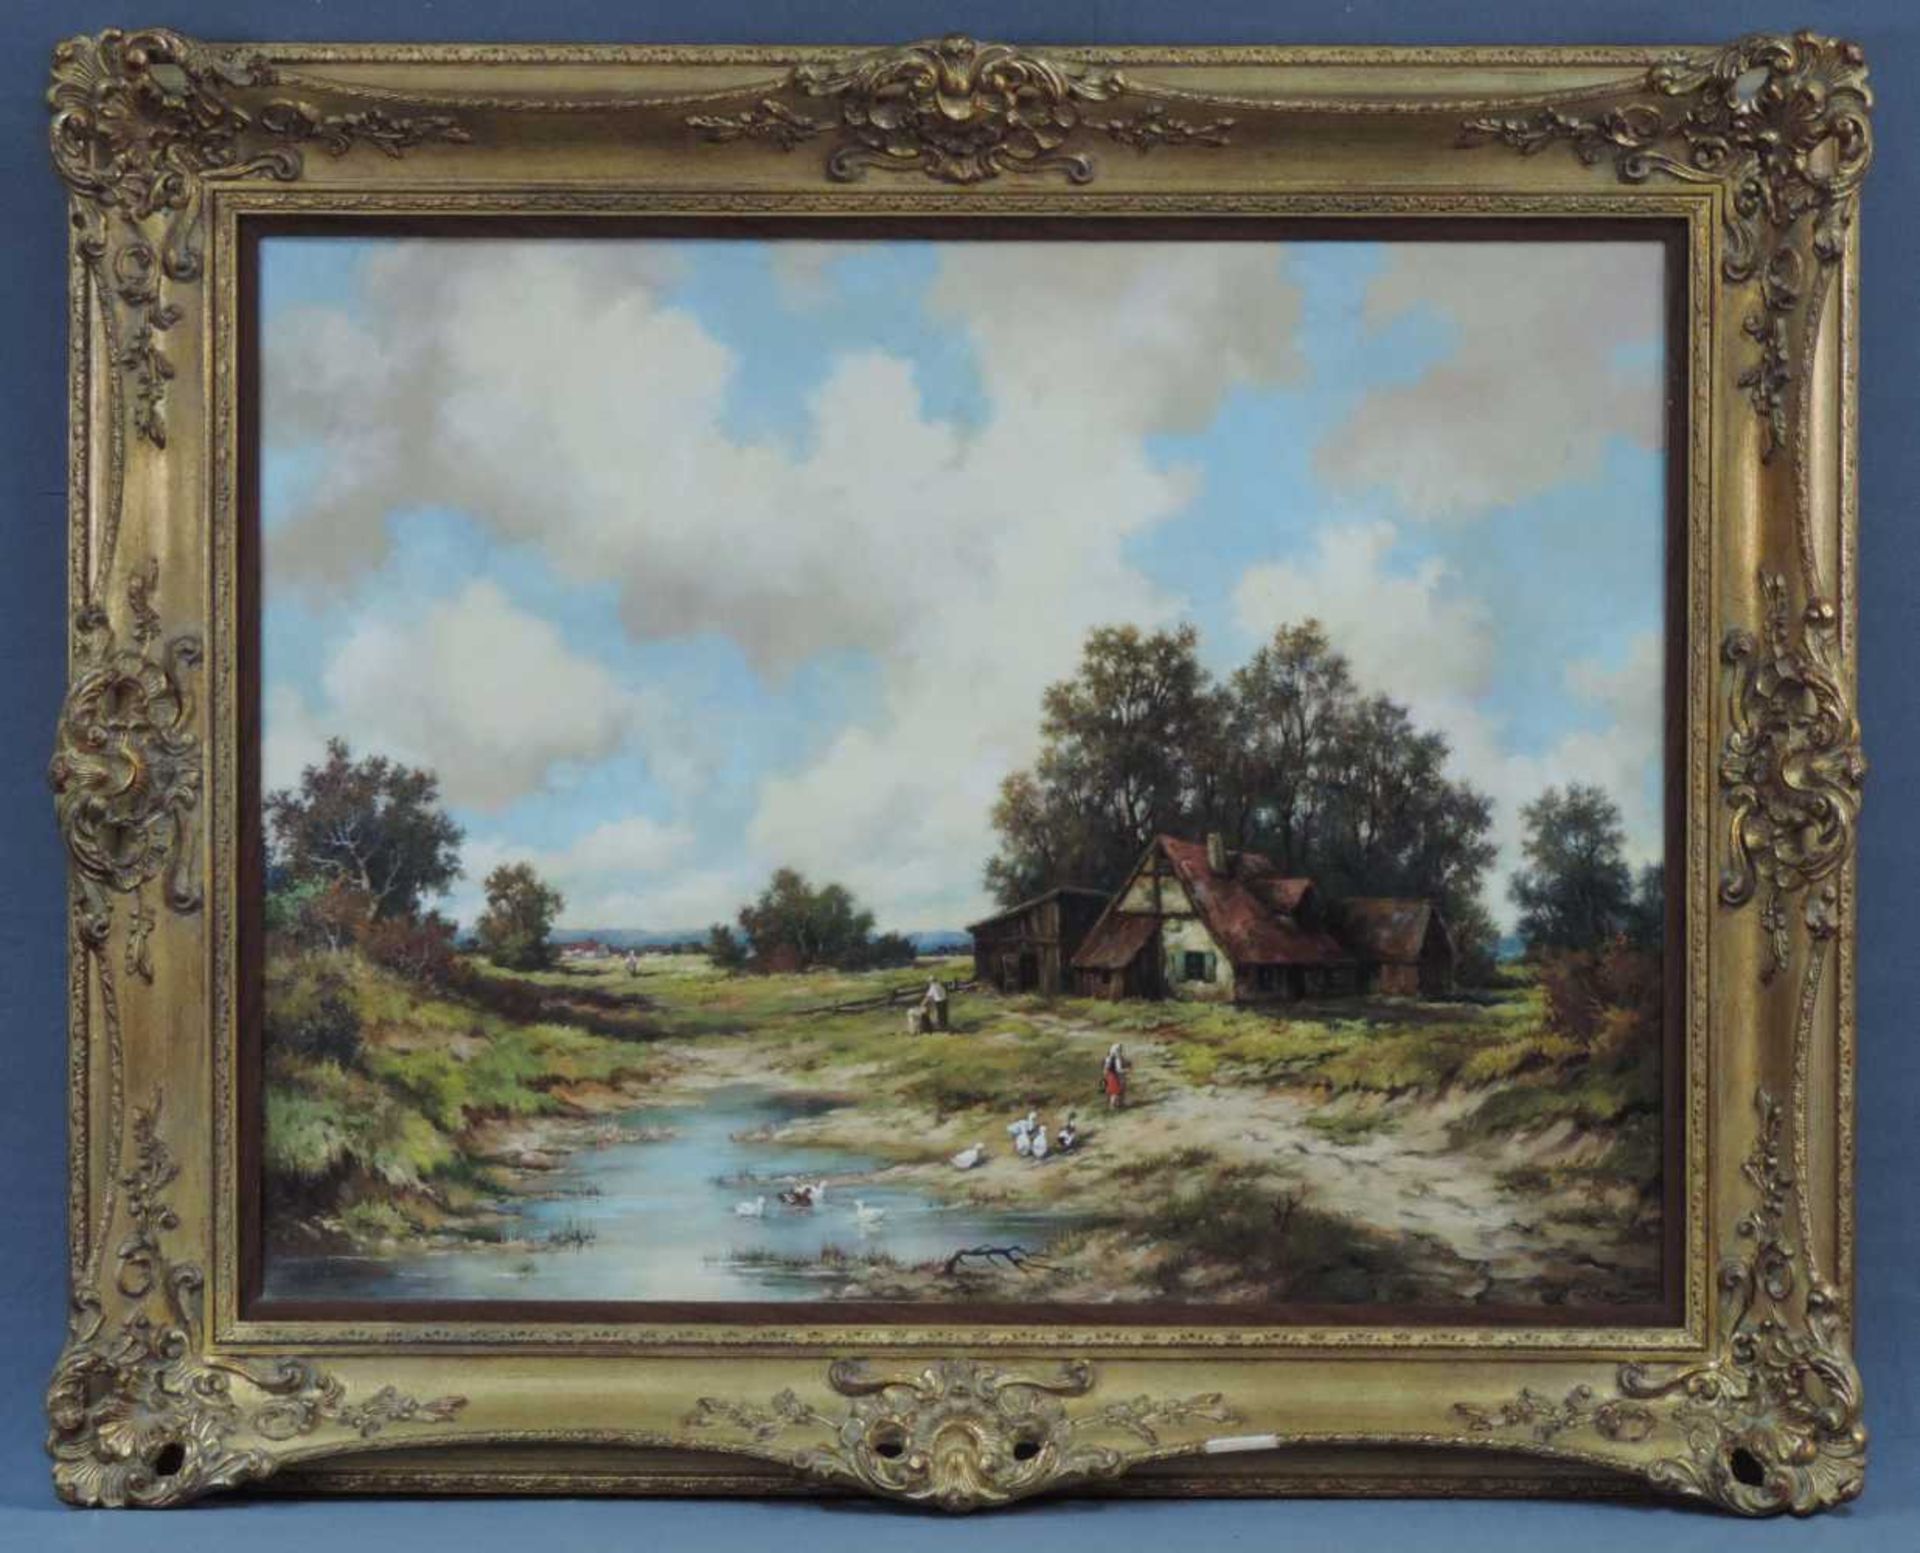 Alfons Maria SPEIER (1923). Bauernhaus mit Teich. 59 cm x 78 cm. Gemälde. Öl auf Leinwand. Signiert.